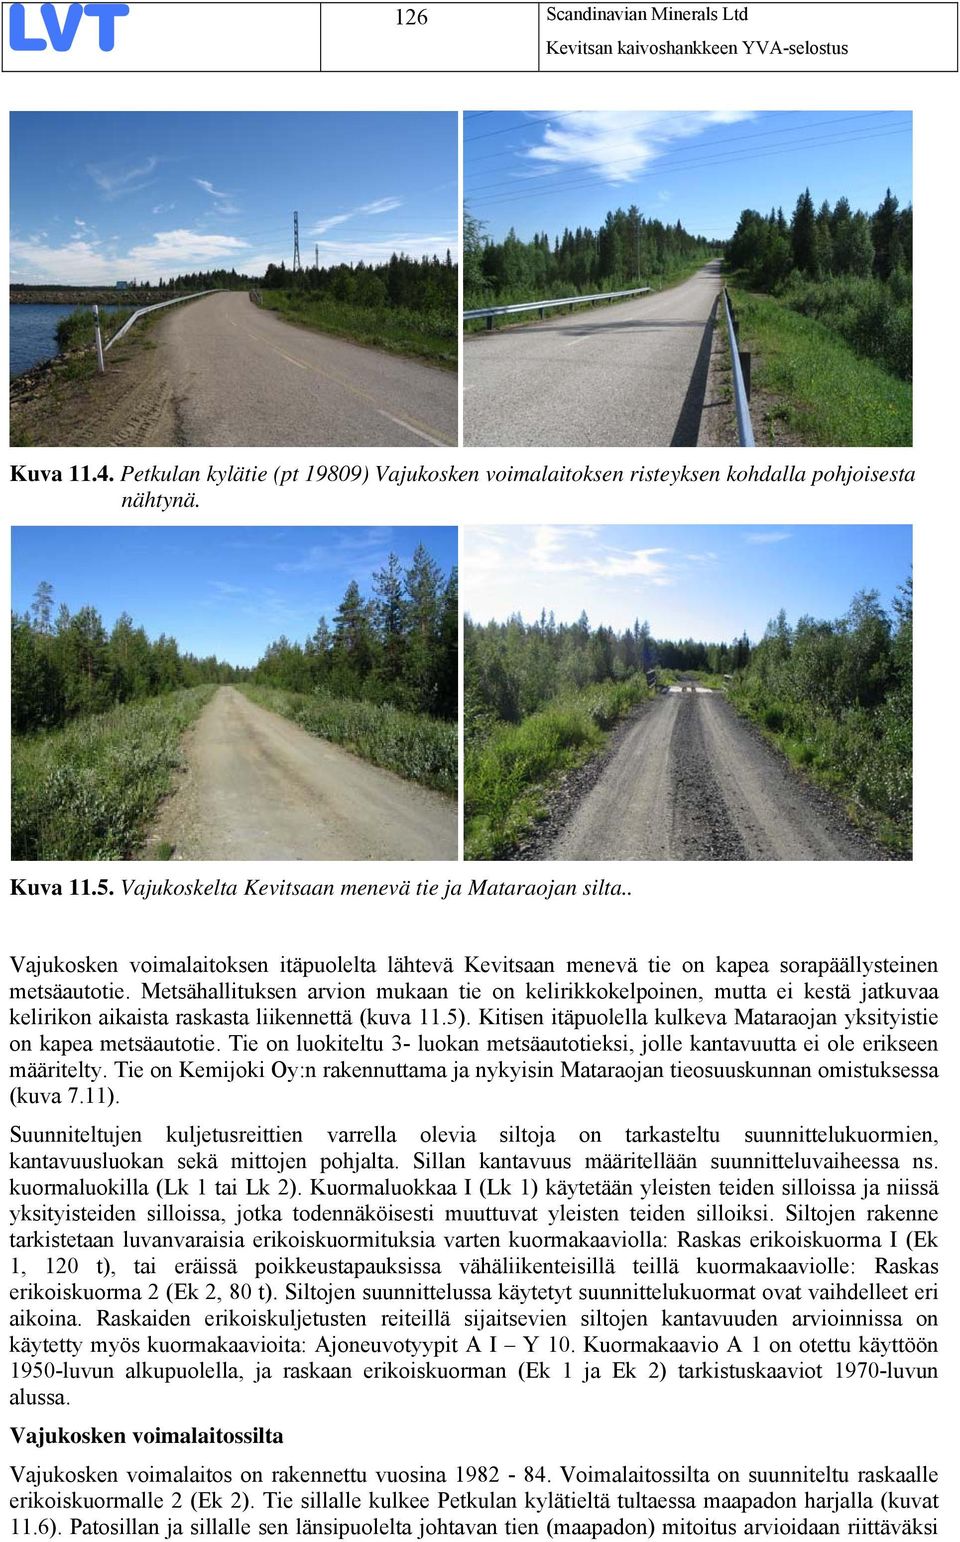 Metsähallituksen arvion mukaan tie on kelirikkokelpoinen, mutta ei kestä jatkuvaa kelirikon aikaista raskasta liikennettä (kuva 11.5).